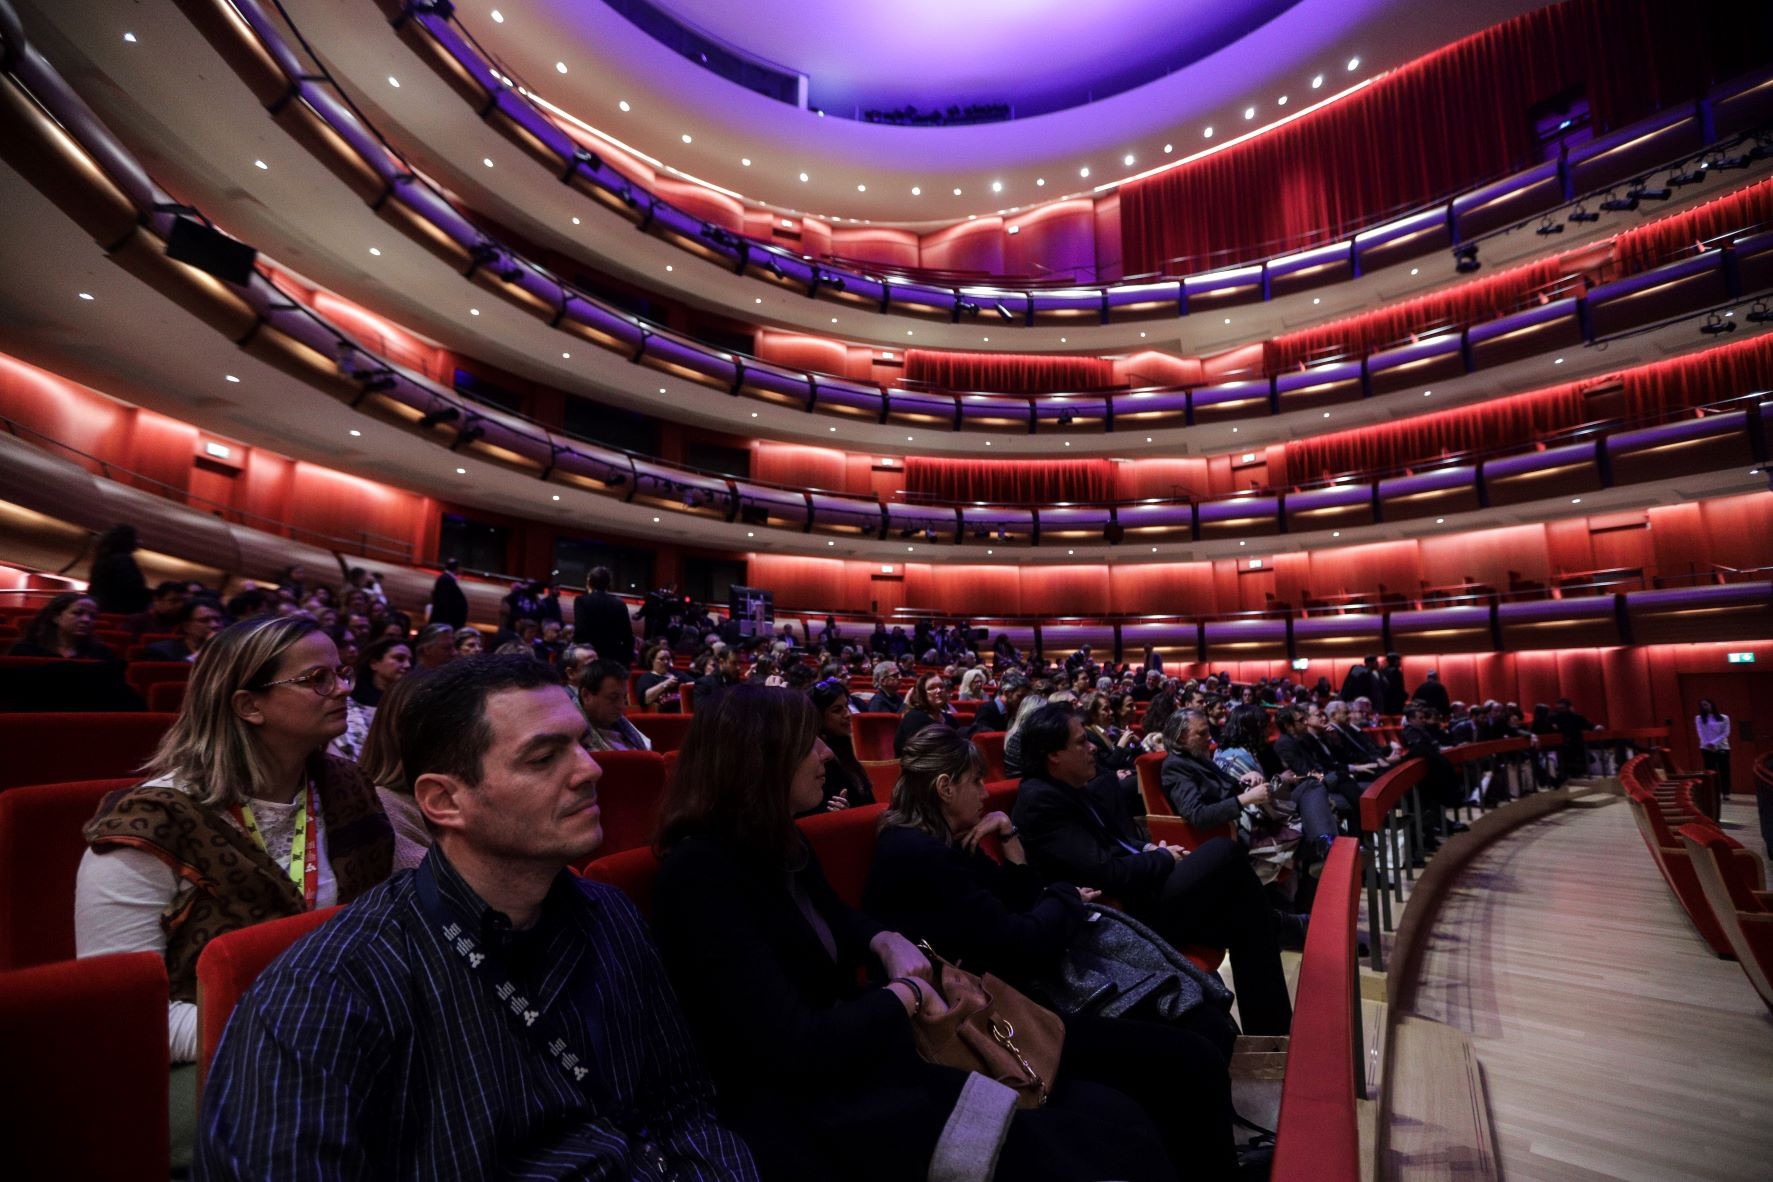 Εθνική Λυρική Σκηνή: Μουσικό θέατρο, περφόρμανς, συναυλίες στο πρόγραμμα της Εναλλακτικής Σκηνής